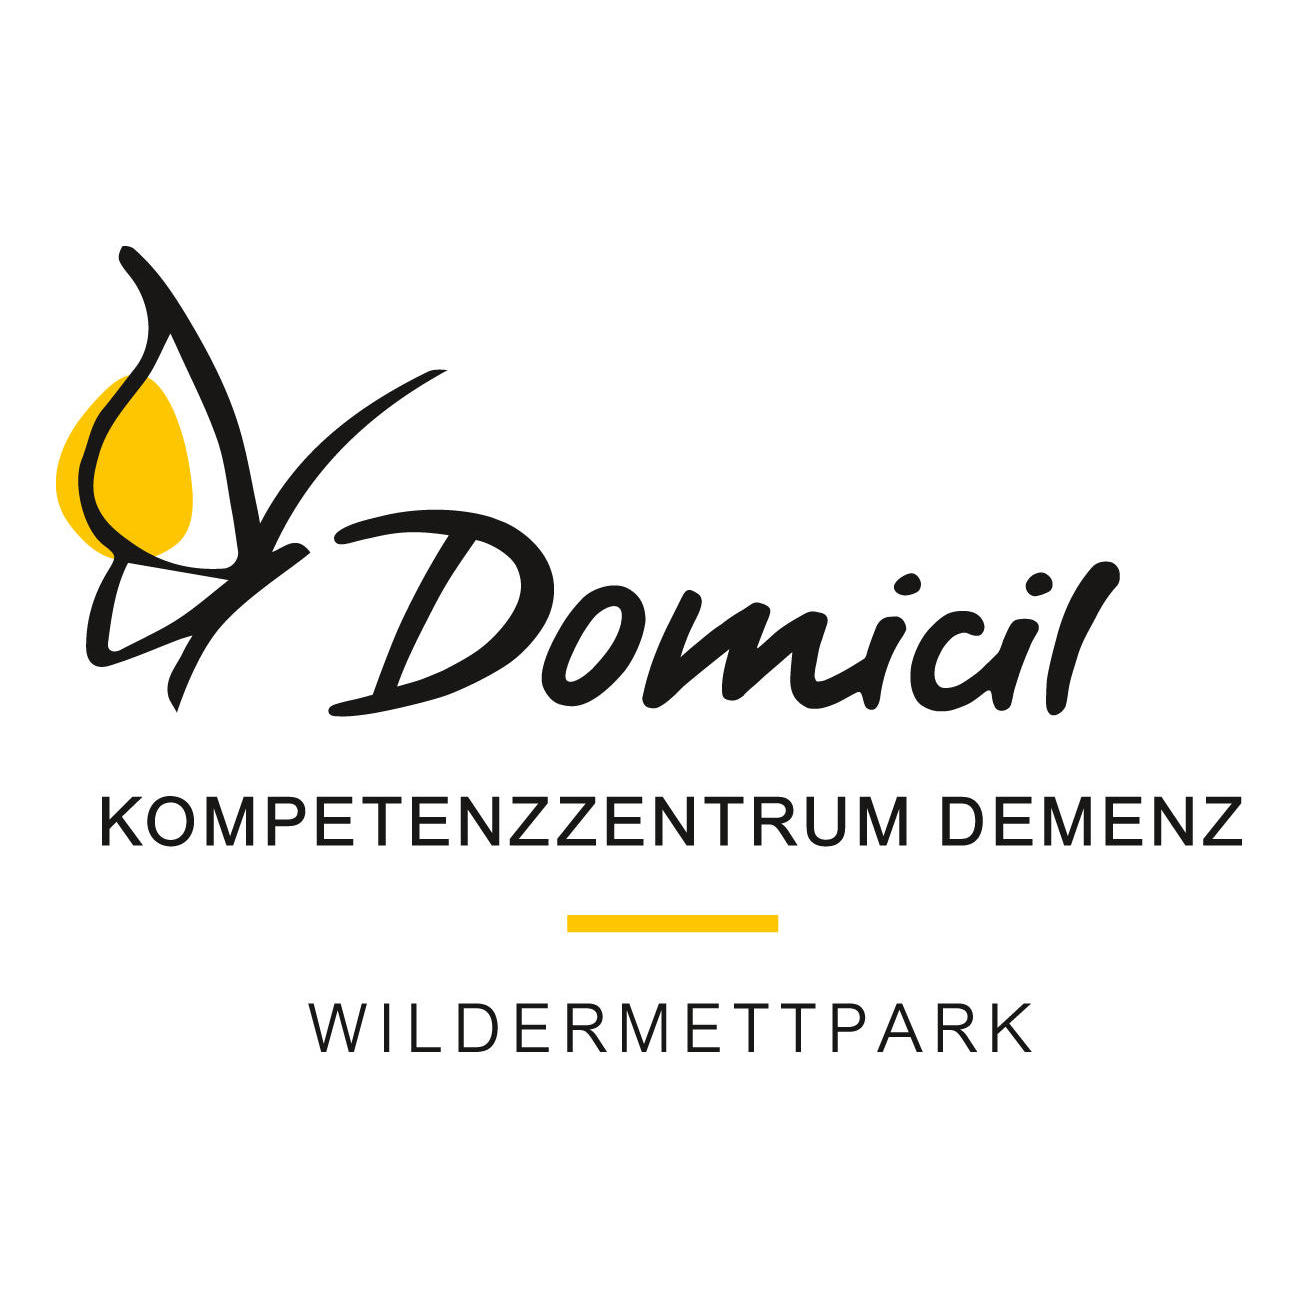 Domicil Kompetenzzentrum Demenz Wildermettpark Logo